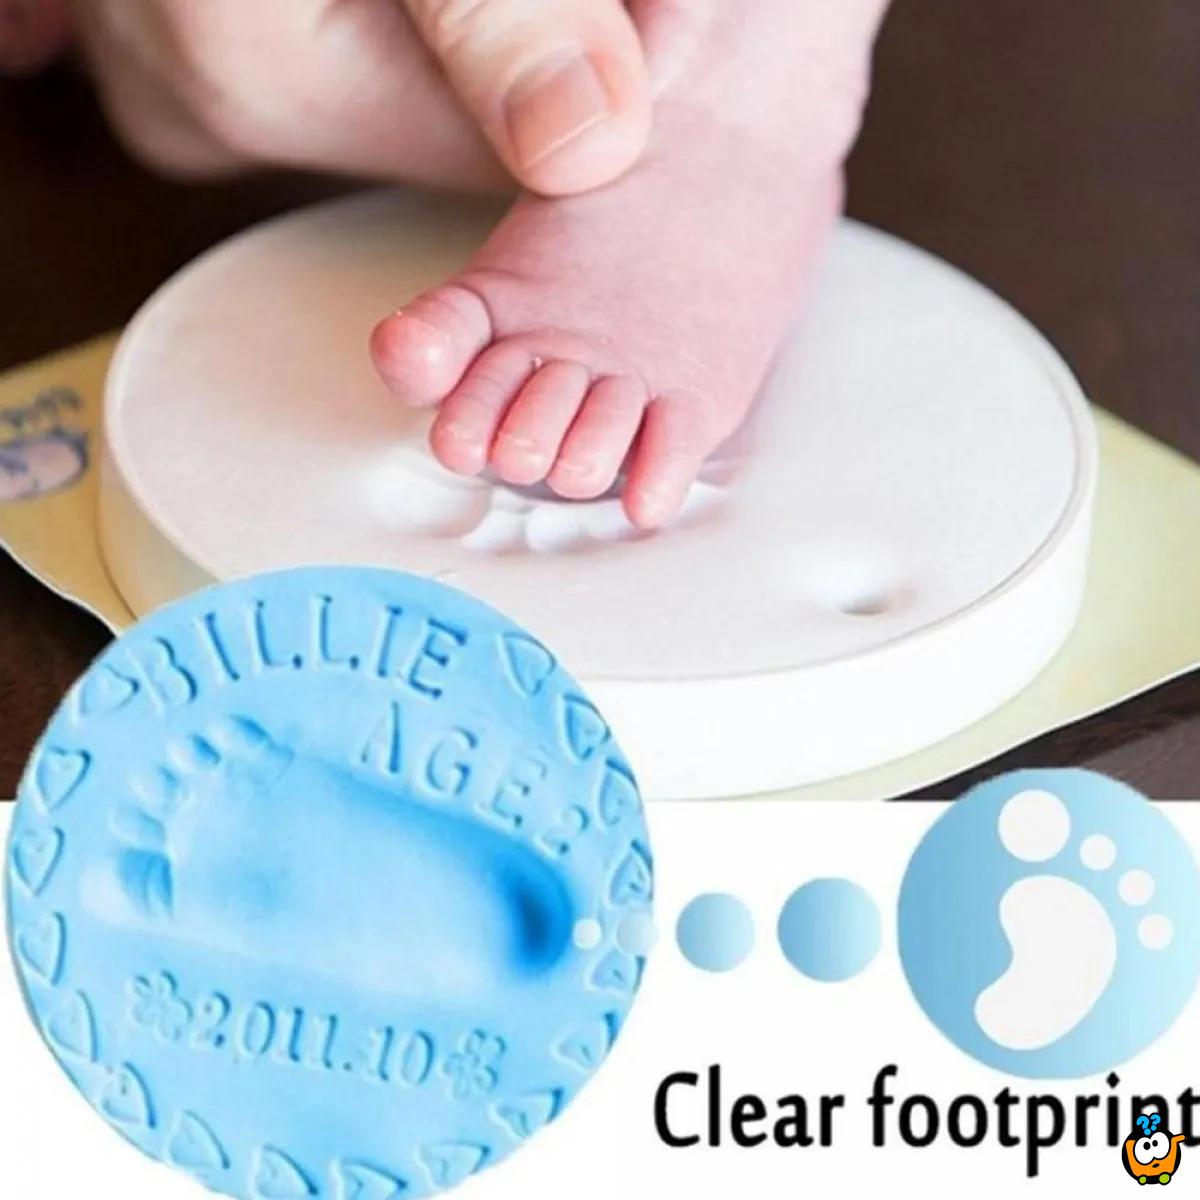 Baby Print - Penasta masa za otisak bebinih šaka i stopala